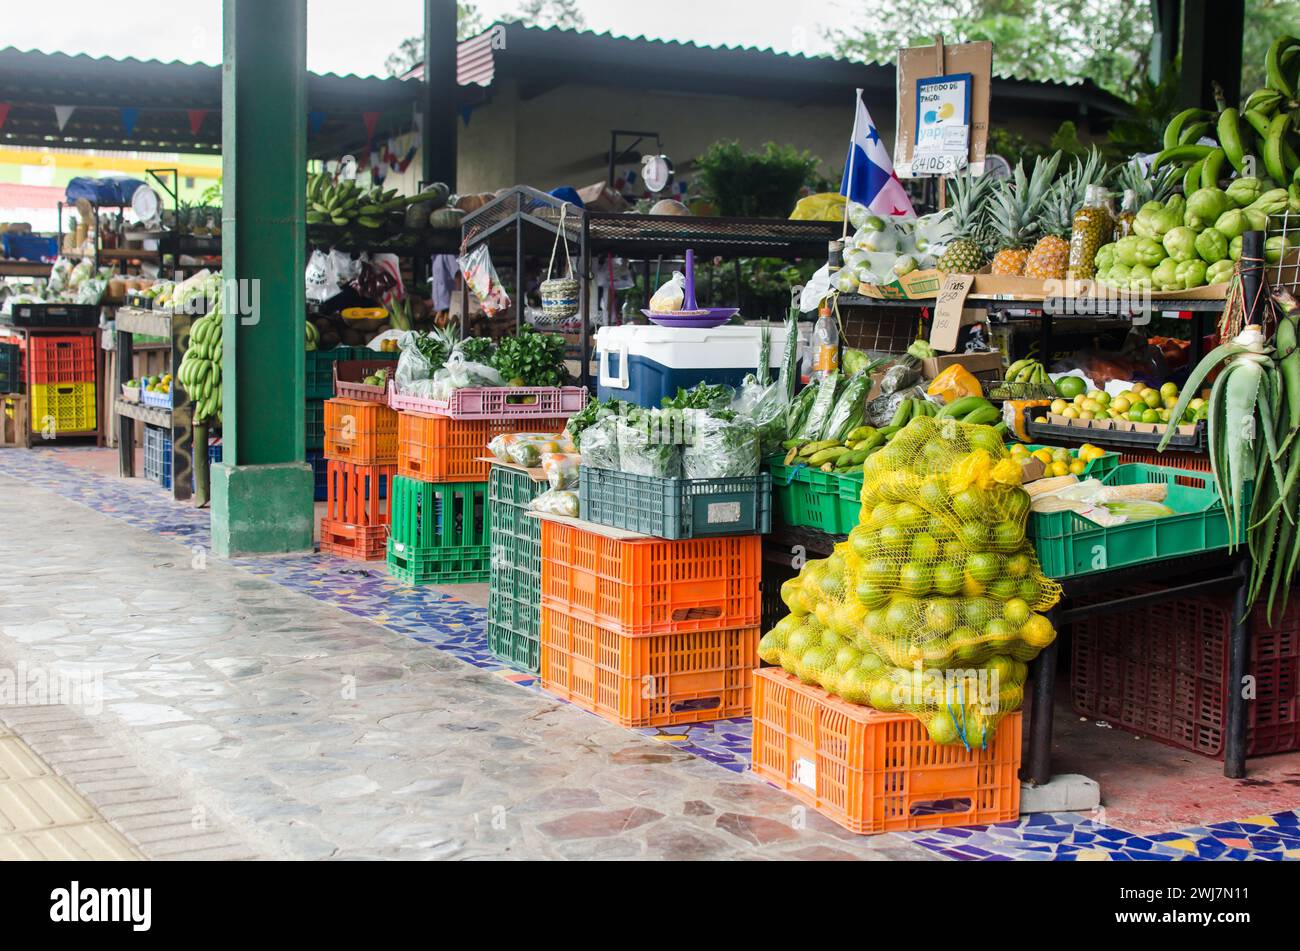 Der kommunale Markt von El Valle de Anton ist ein beliebter Ort, der frische Produkte, lokales Kunsthandwerk und typische Süßigkeiten anbietet. Stockfoto